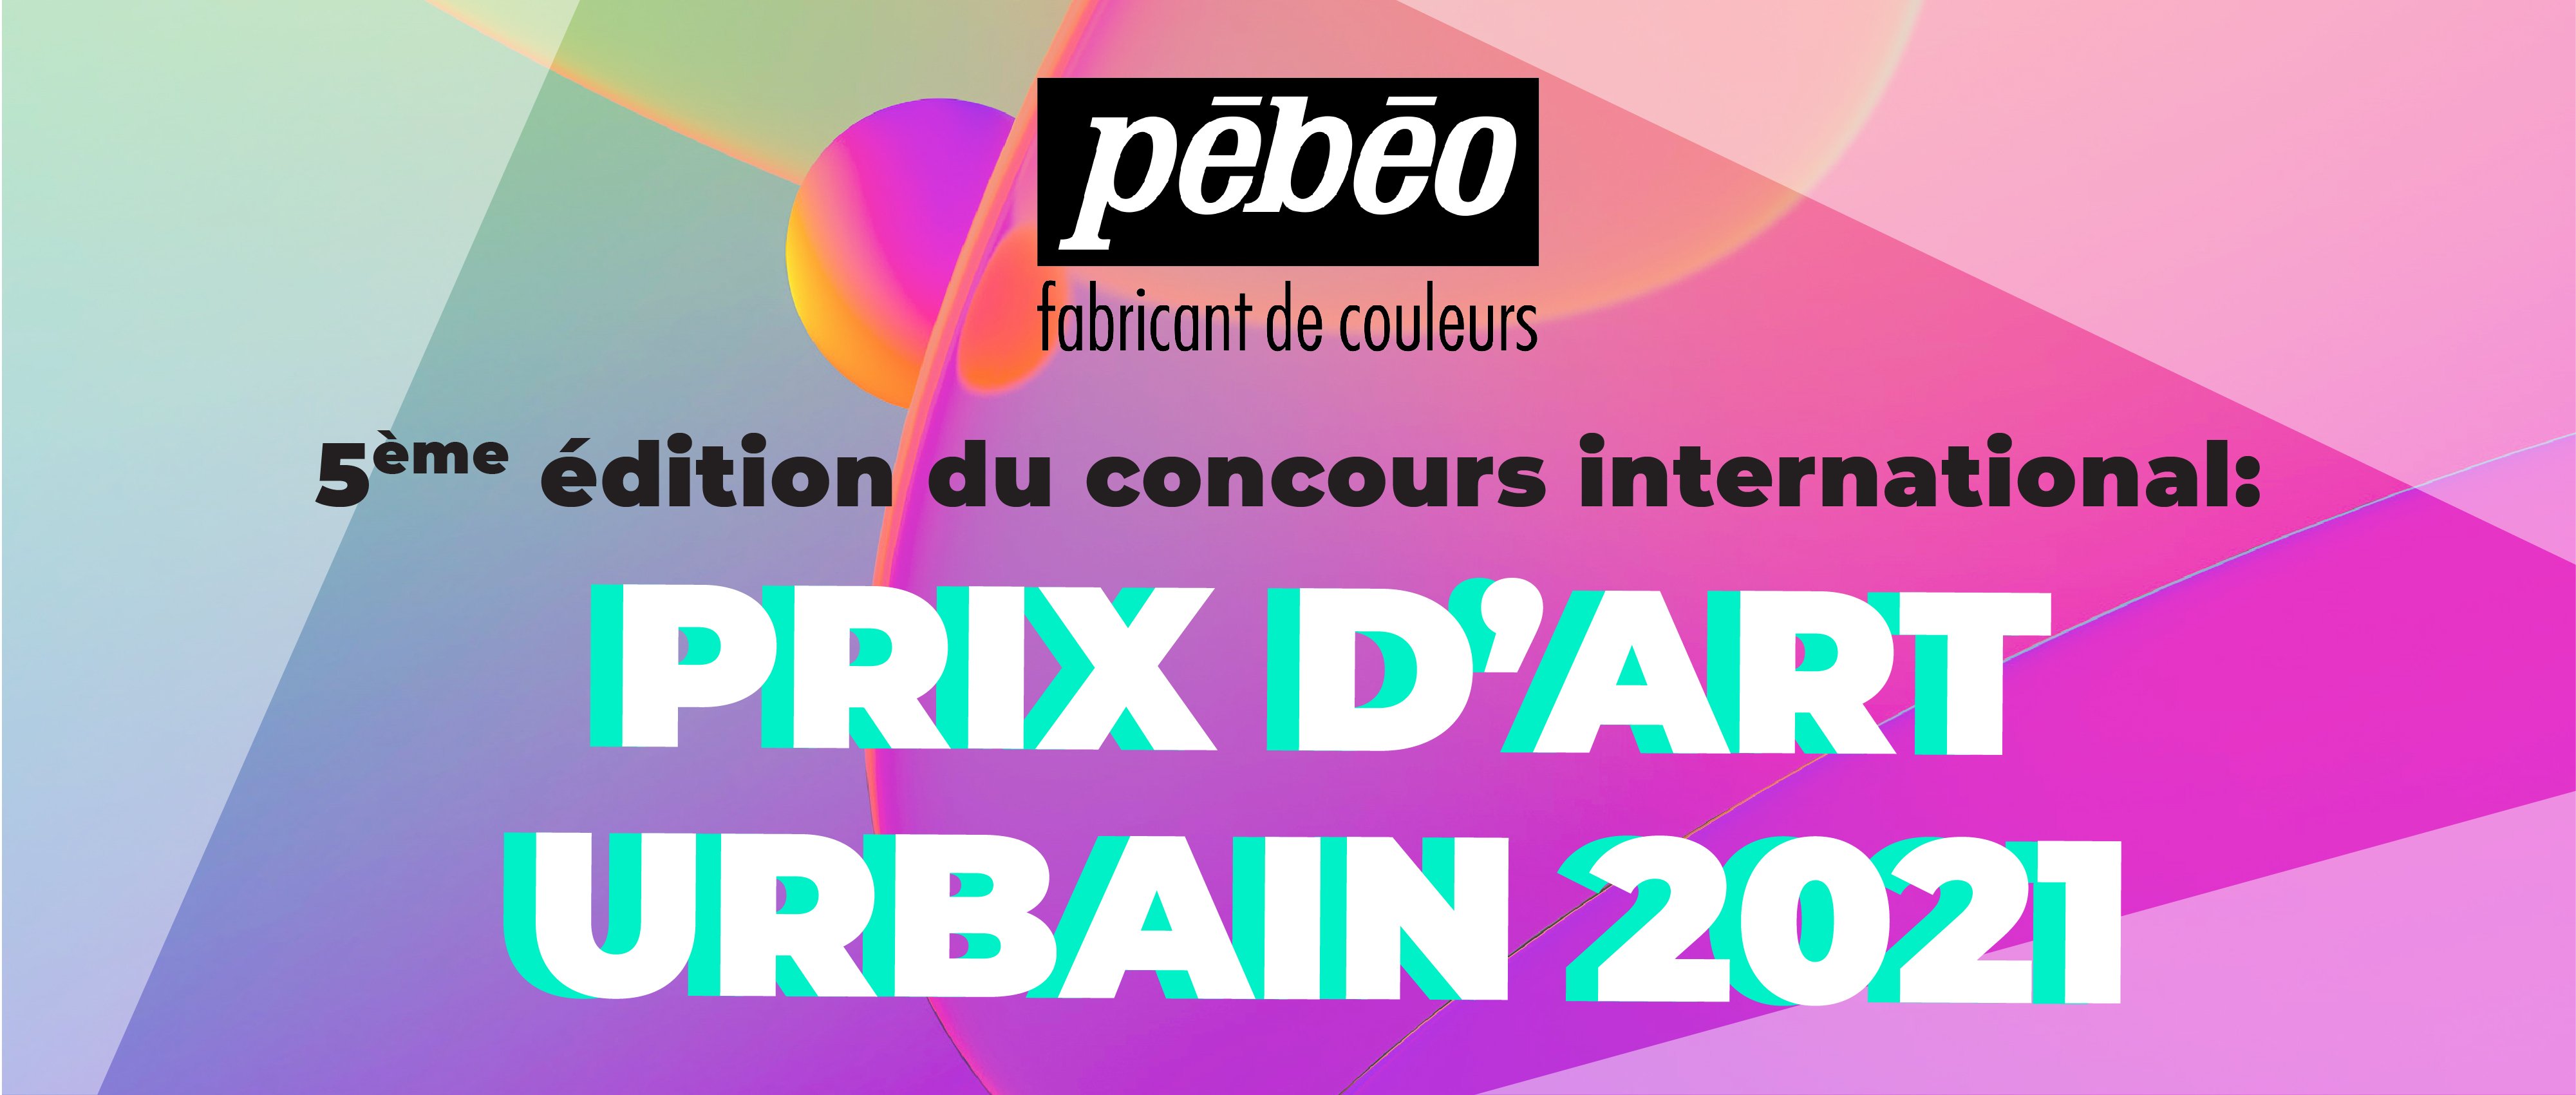 06.14 PEBEO - Prix d’Art Urbain 2021 logo_3.jpg